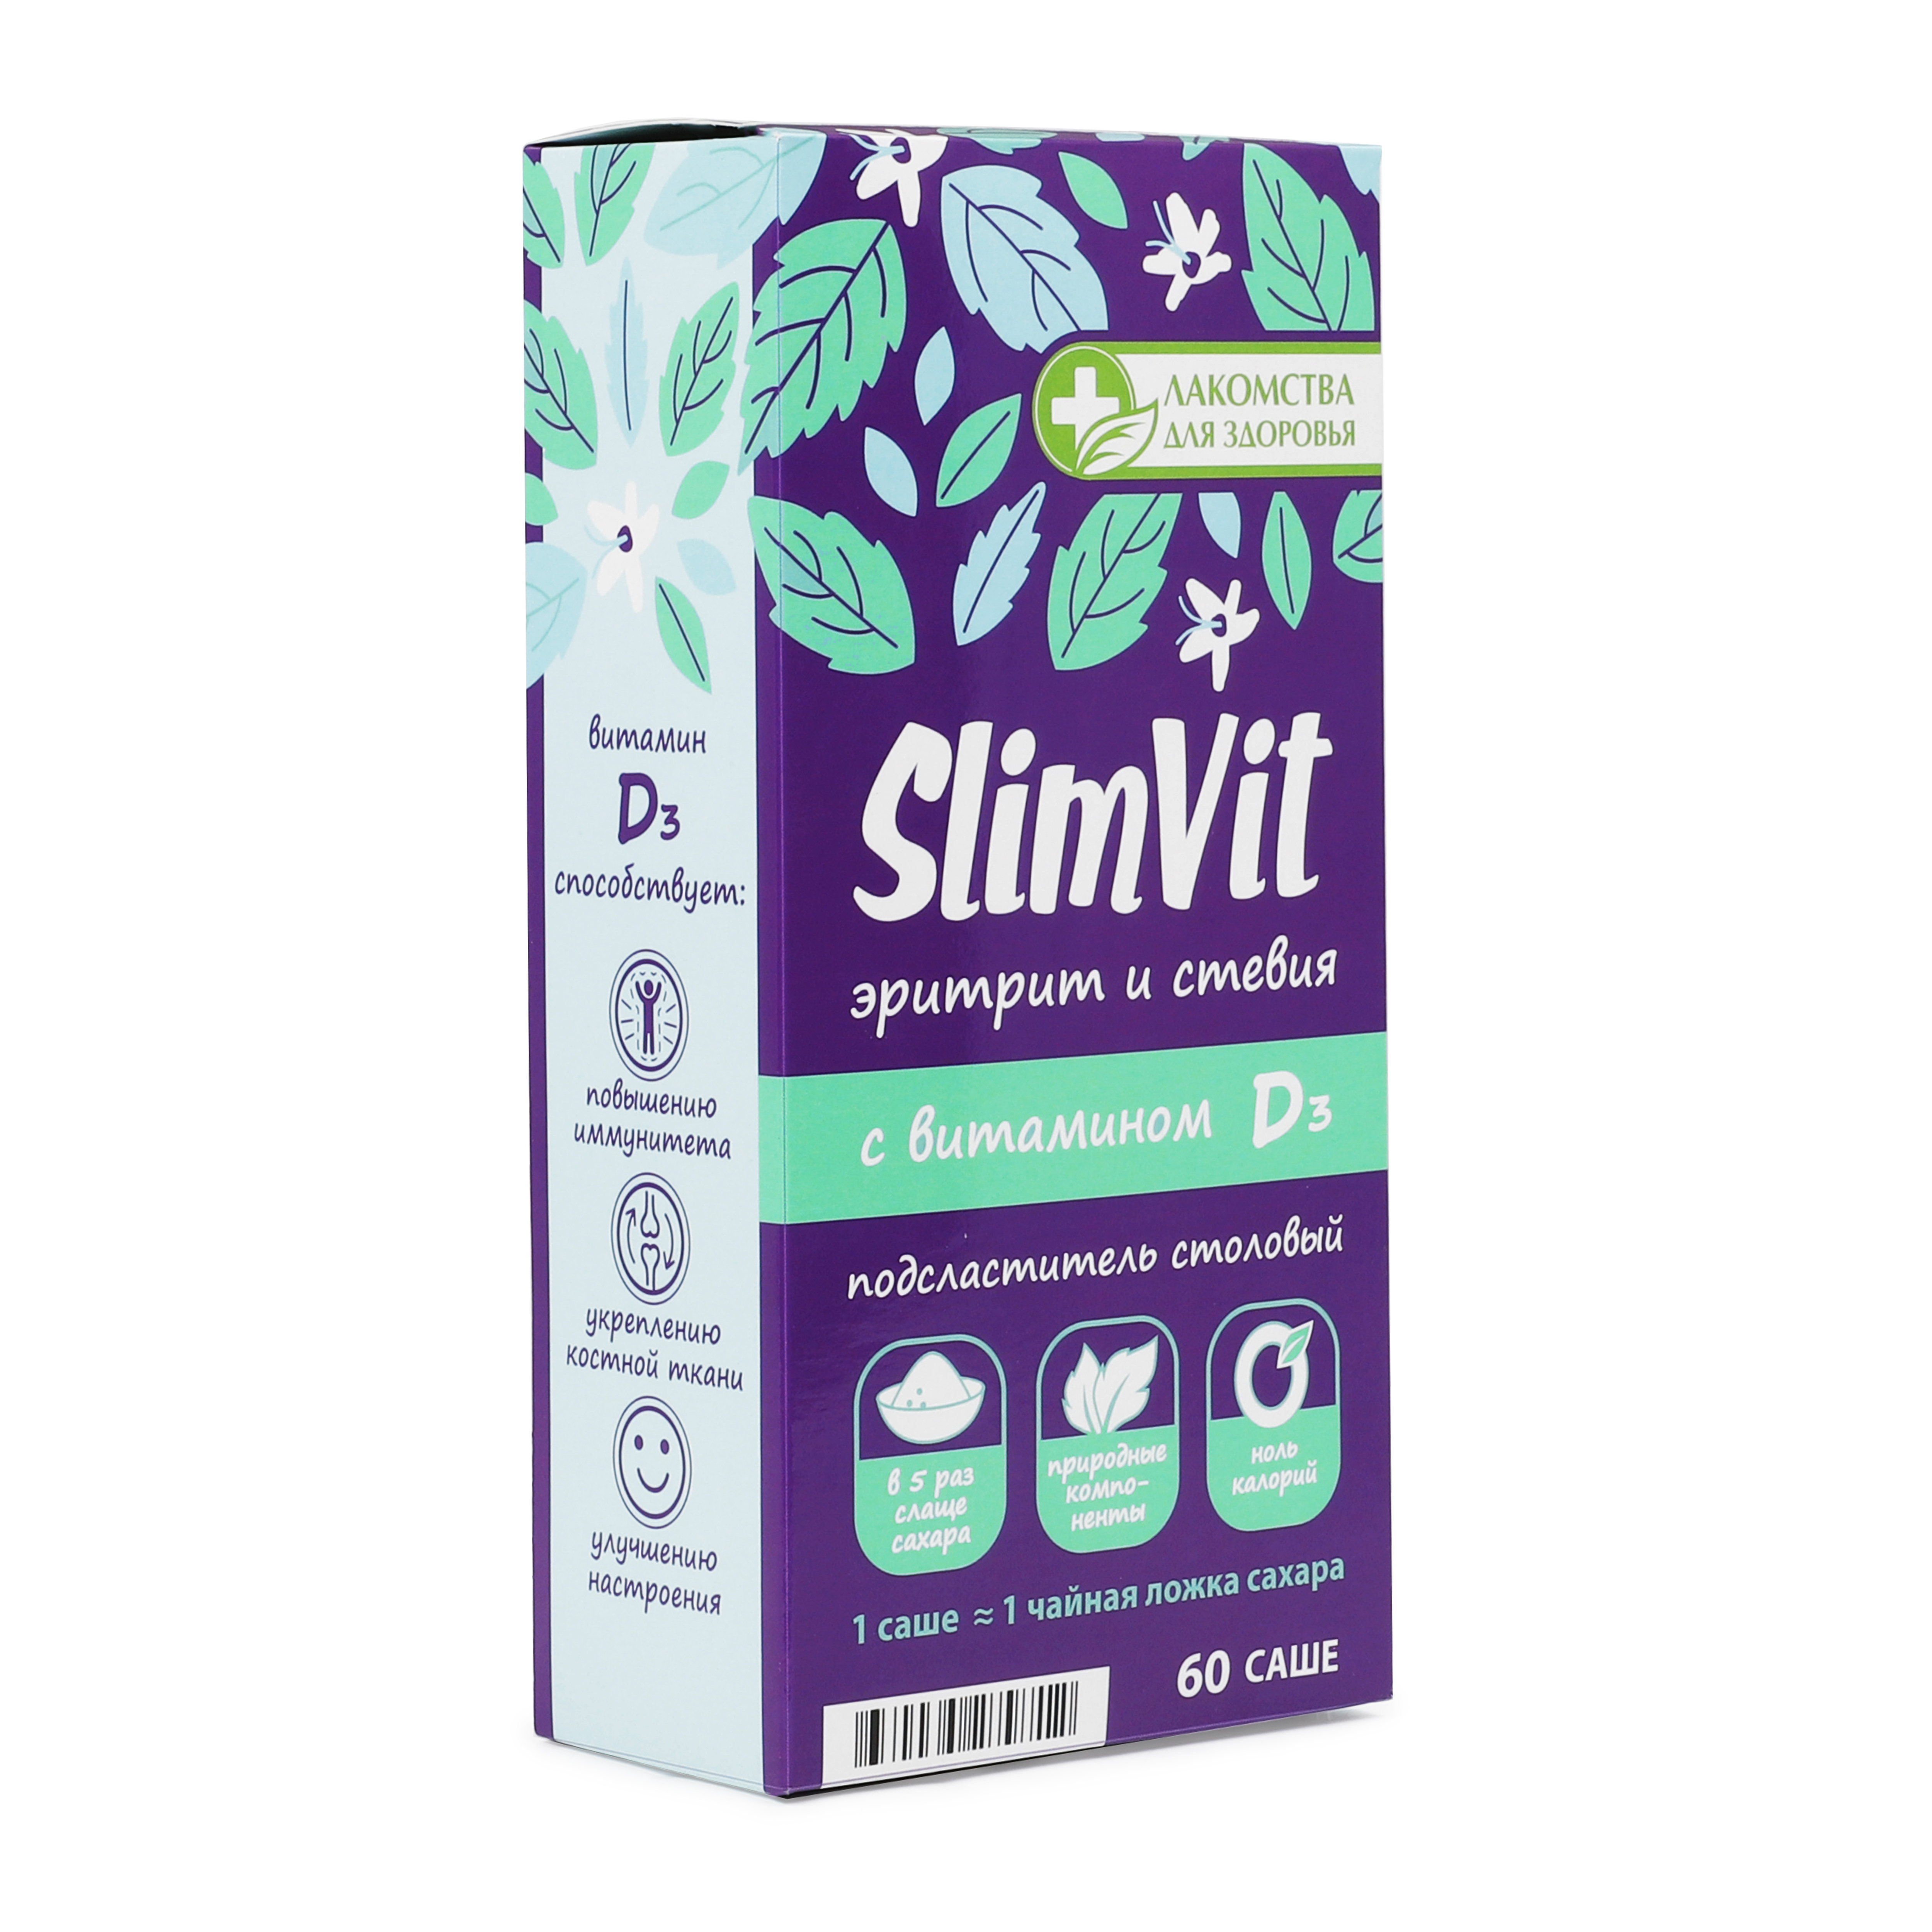 Подсластитель столовый "SlimVit" эритрит и стевия с витамином Dз (саше)